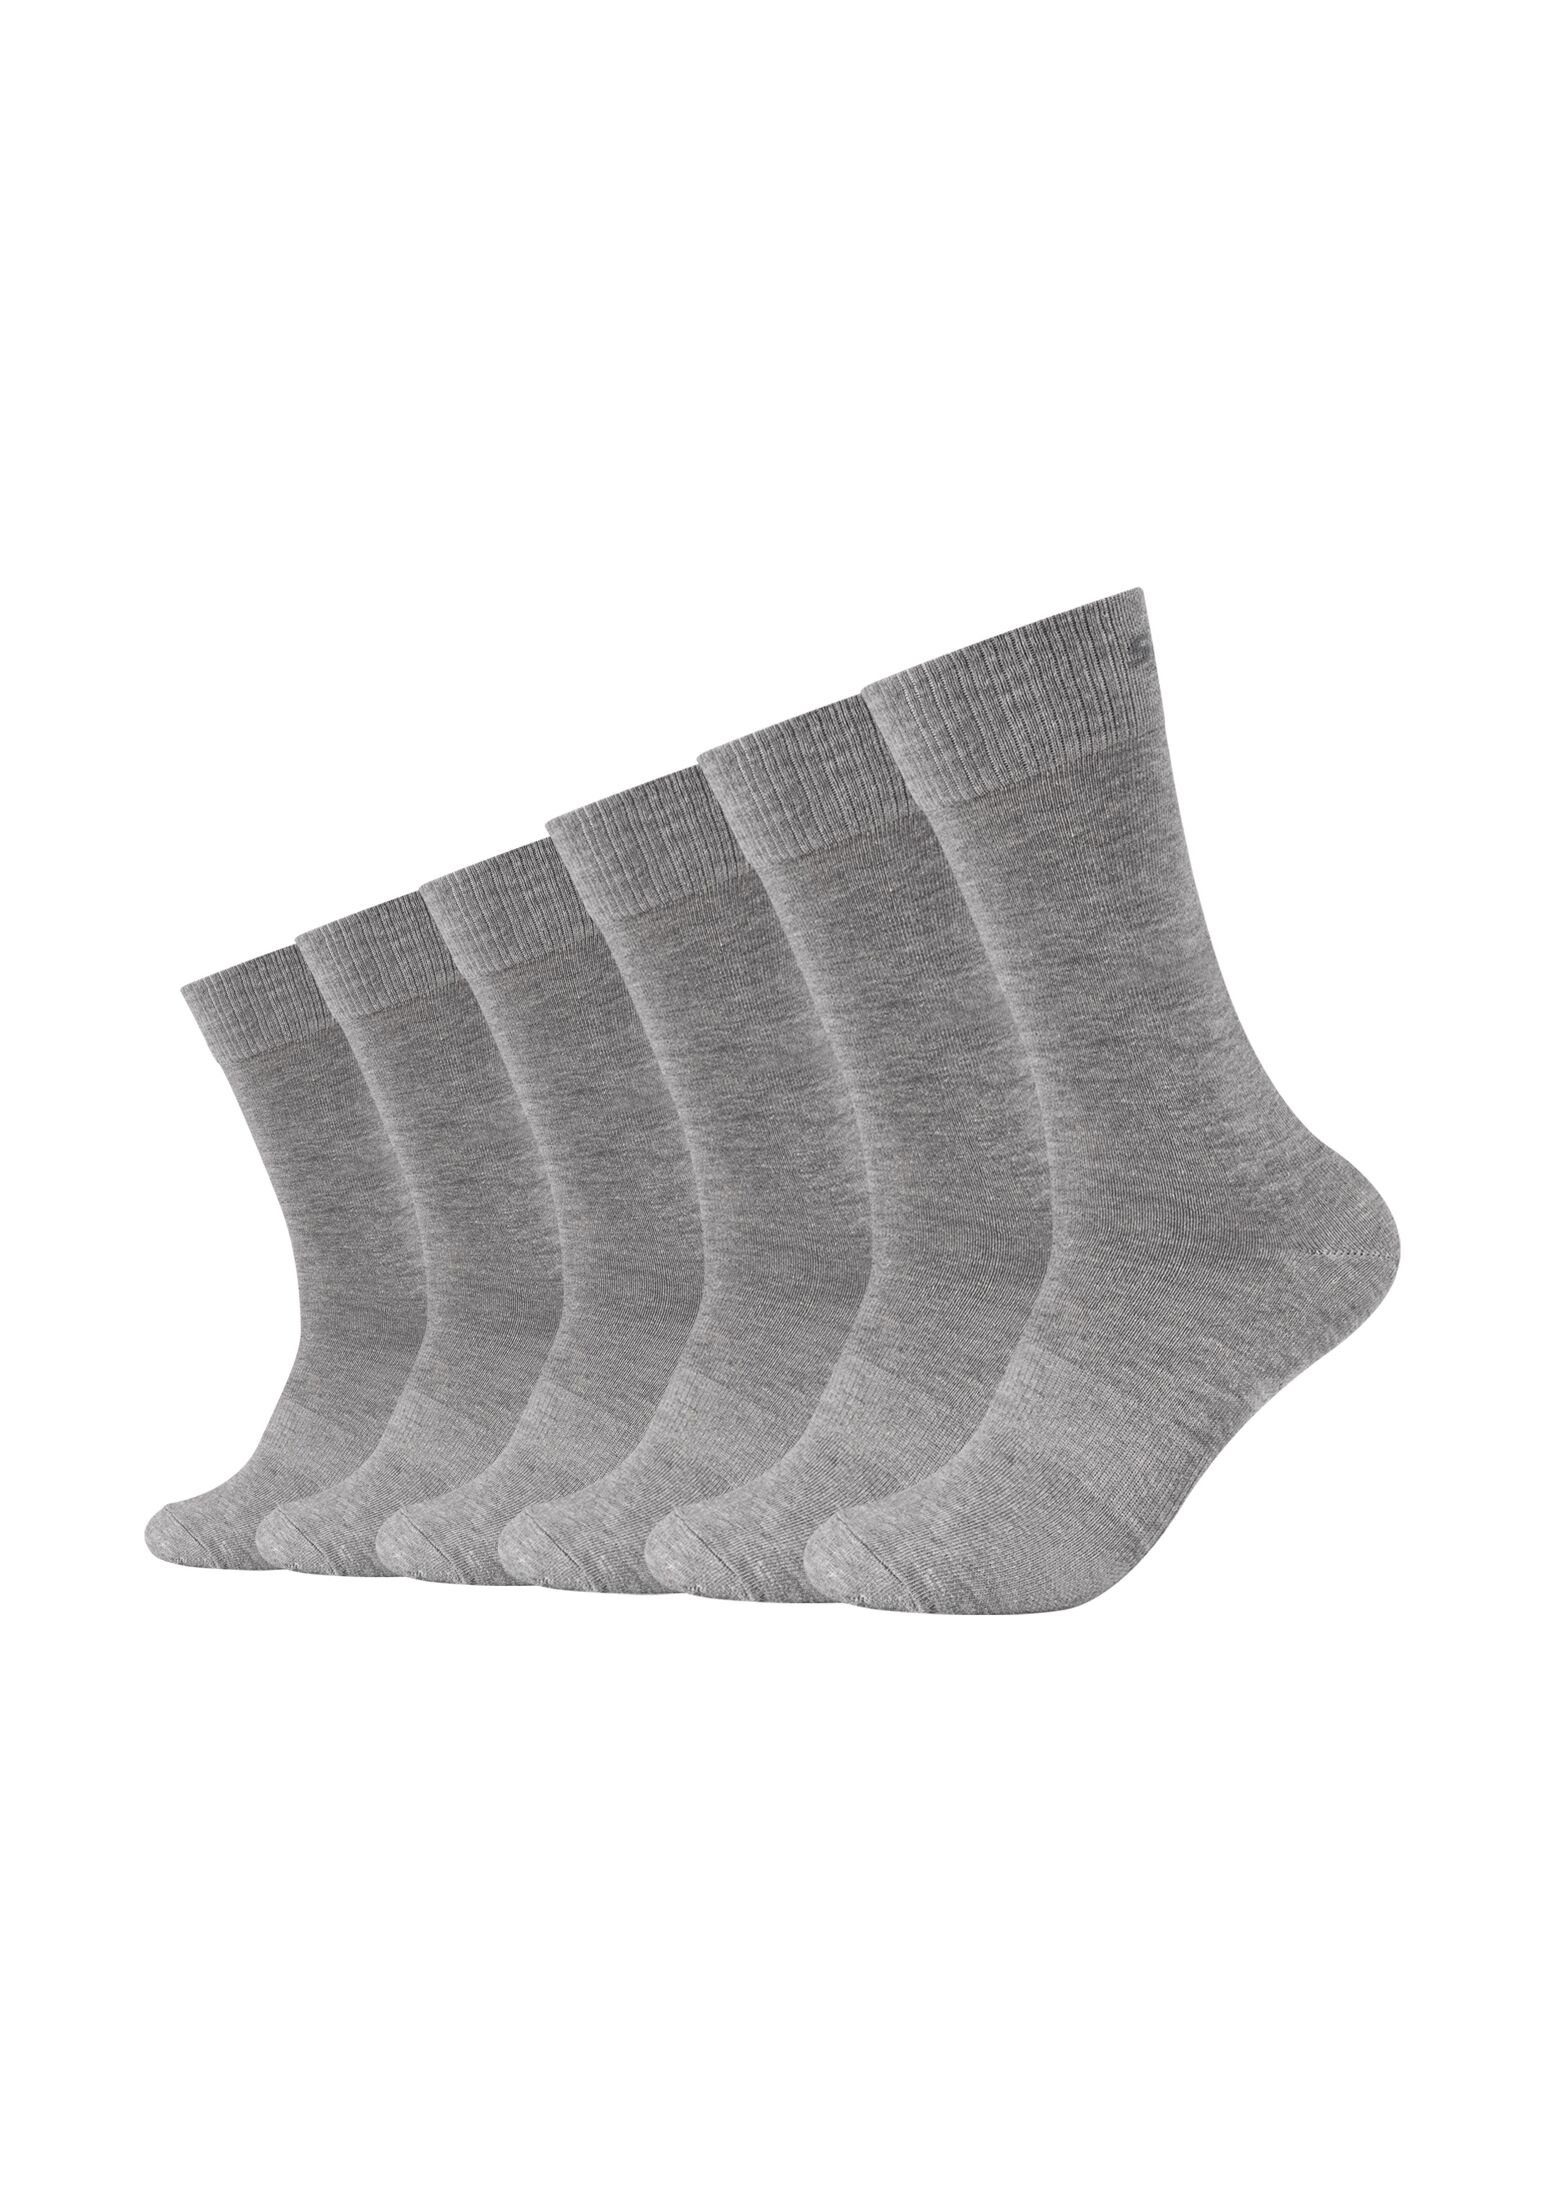 Skechers Socken Socken 6er Pack light melange grey